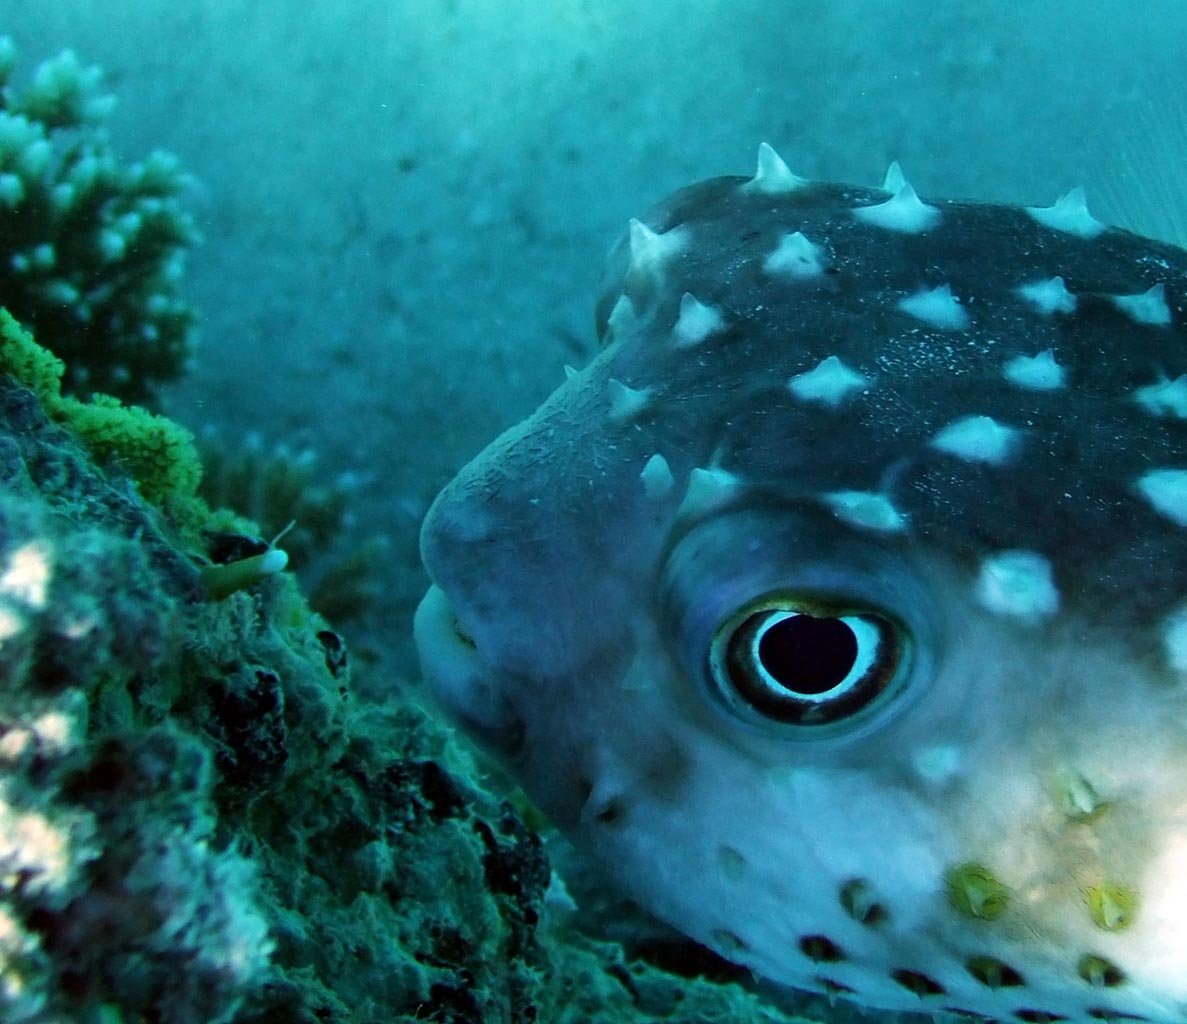 A burrfish - big eyes, many thorns